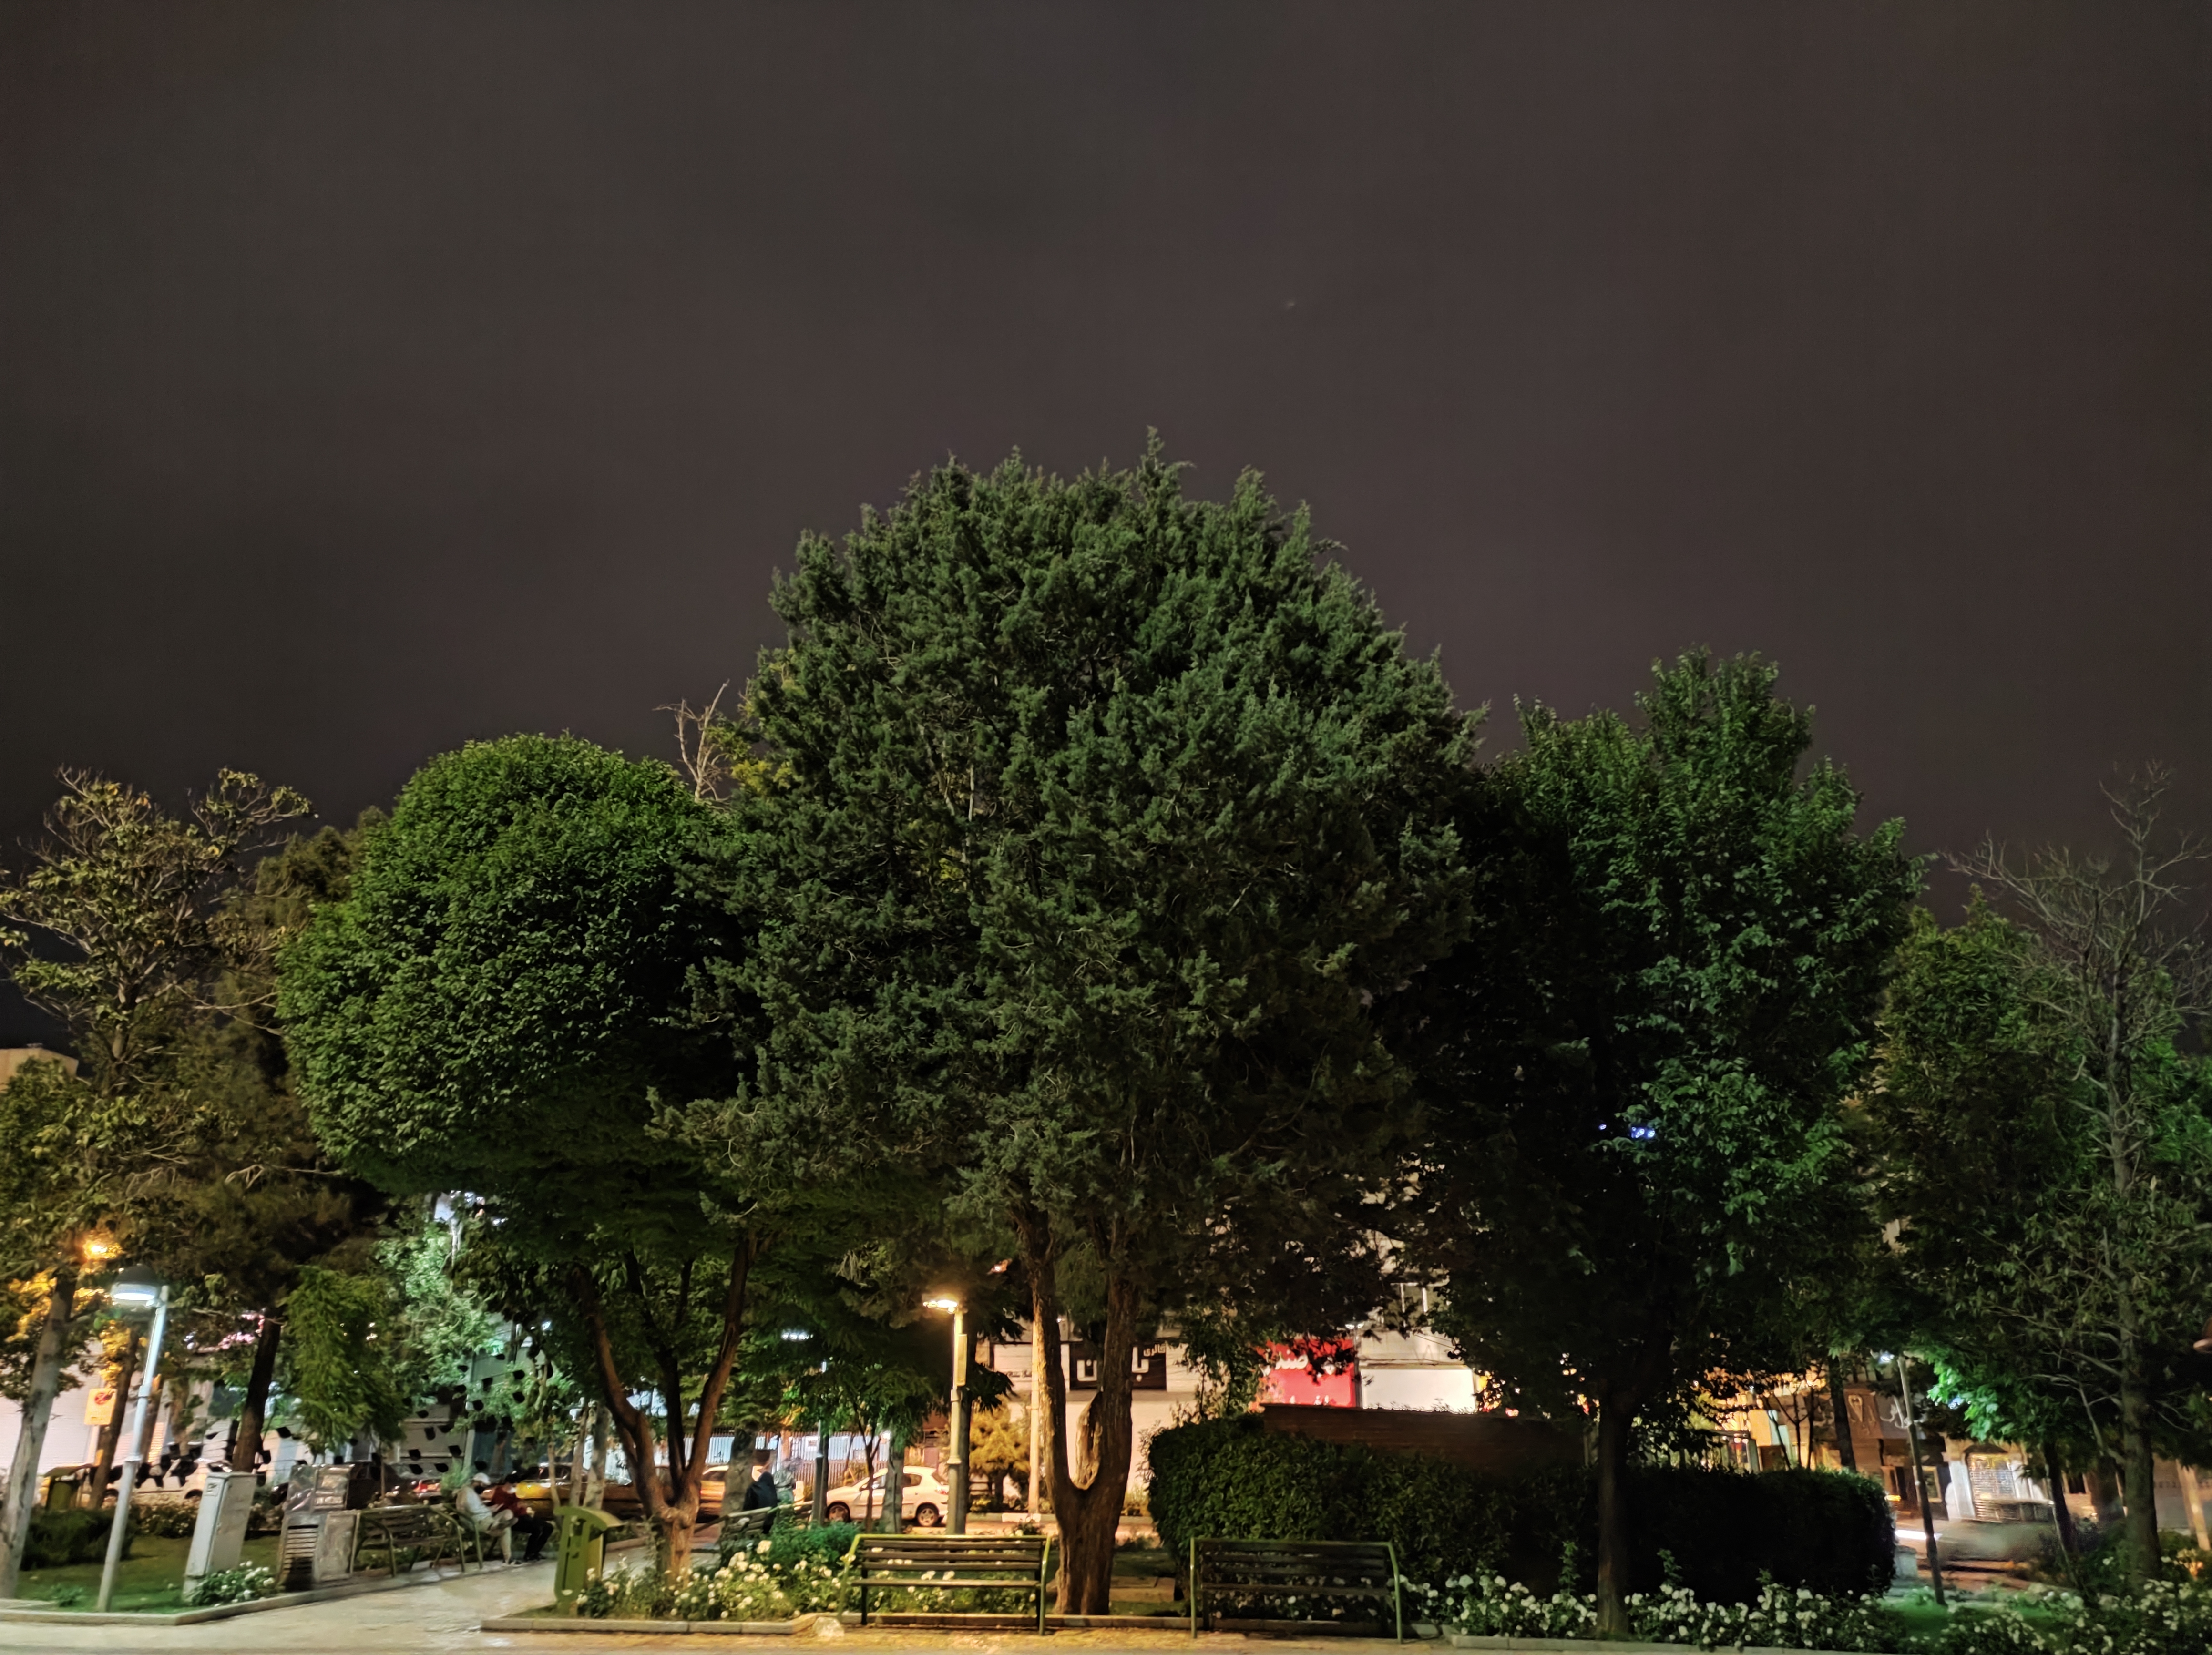 نمونه عکس دوربین اصلی می ۱۱ لایت در محیط تاریک - درختان پارک میدان هفت حوض